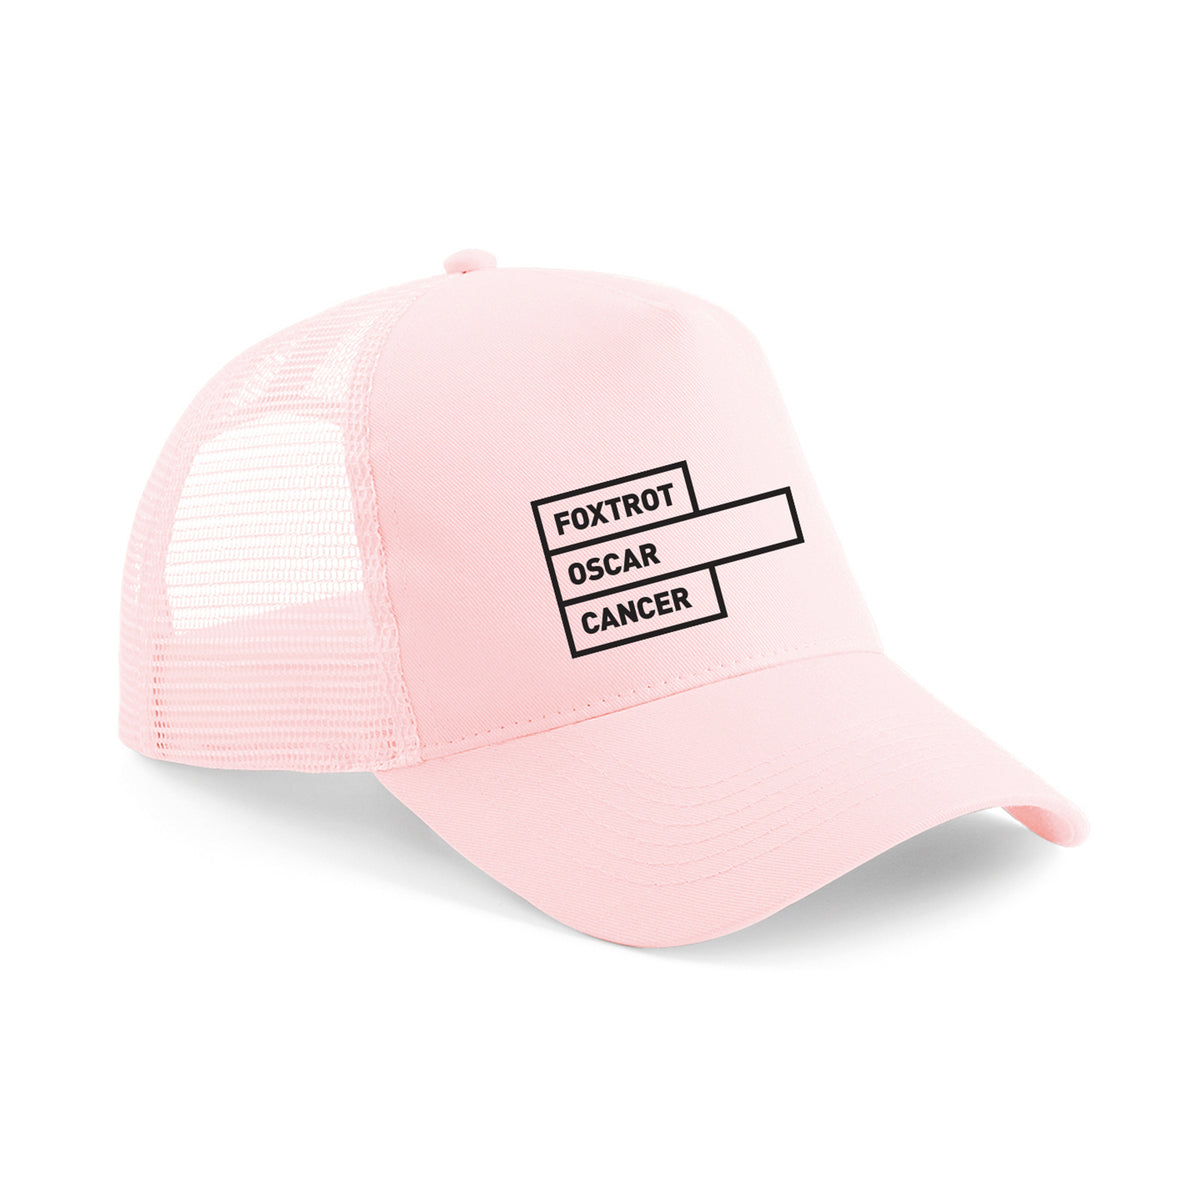 Foxtrot Oscar Snapback Trucker Cap: Pastel Pink/Pink